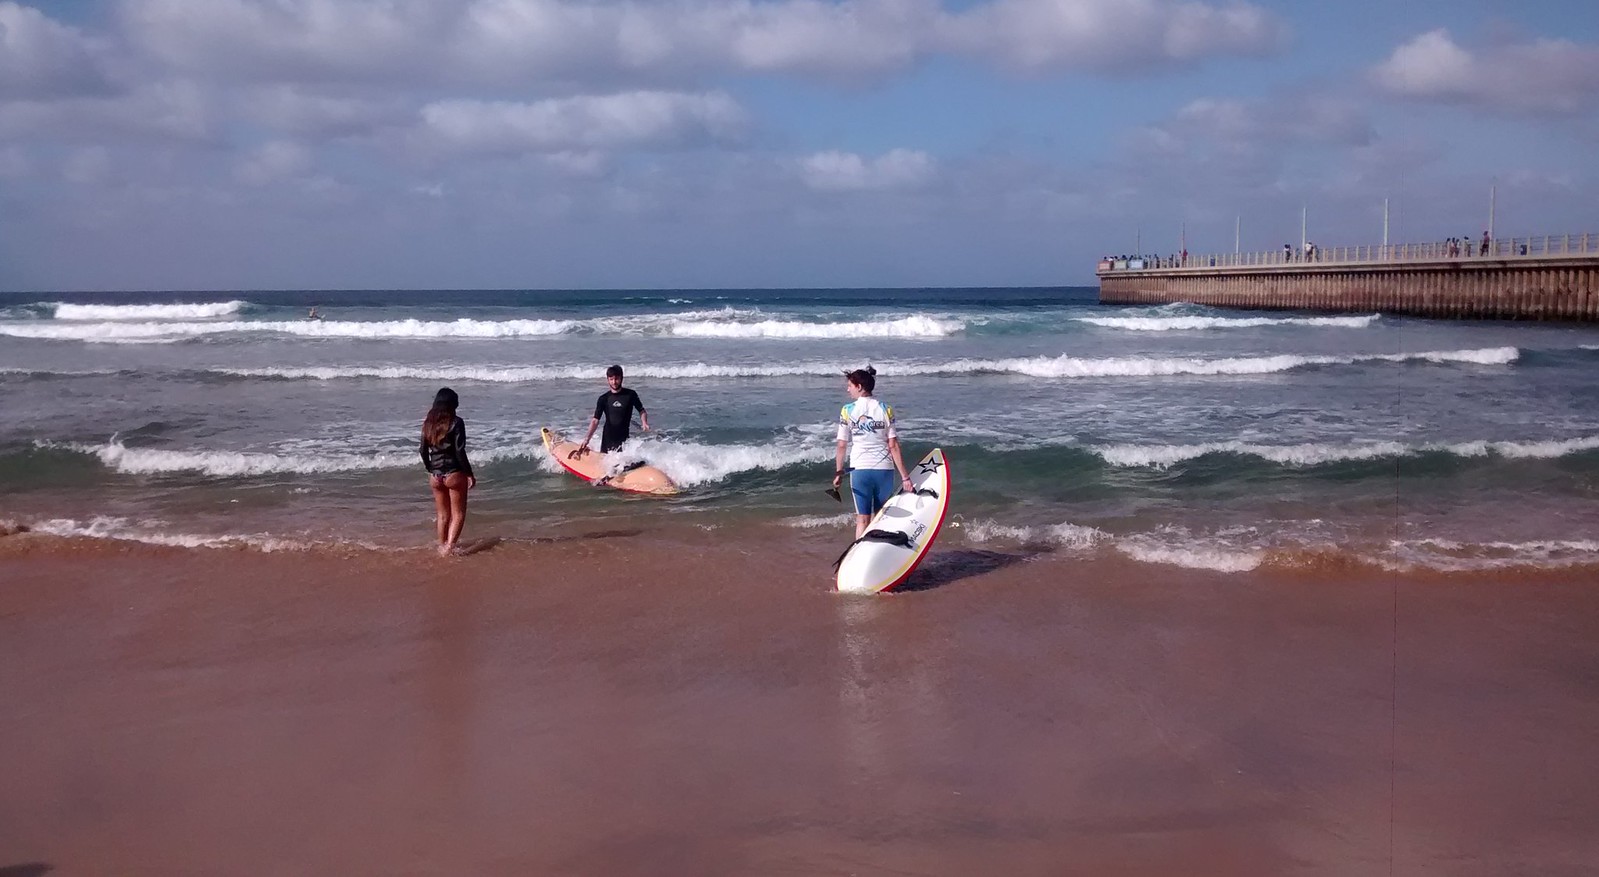 Waveski surfing